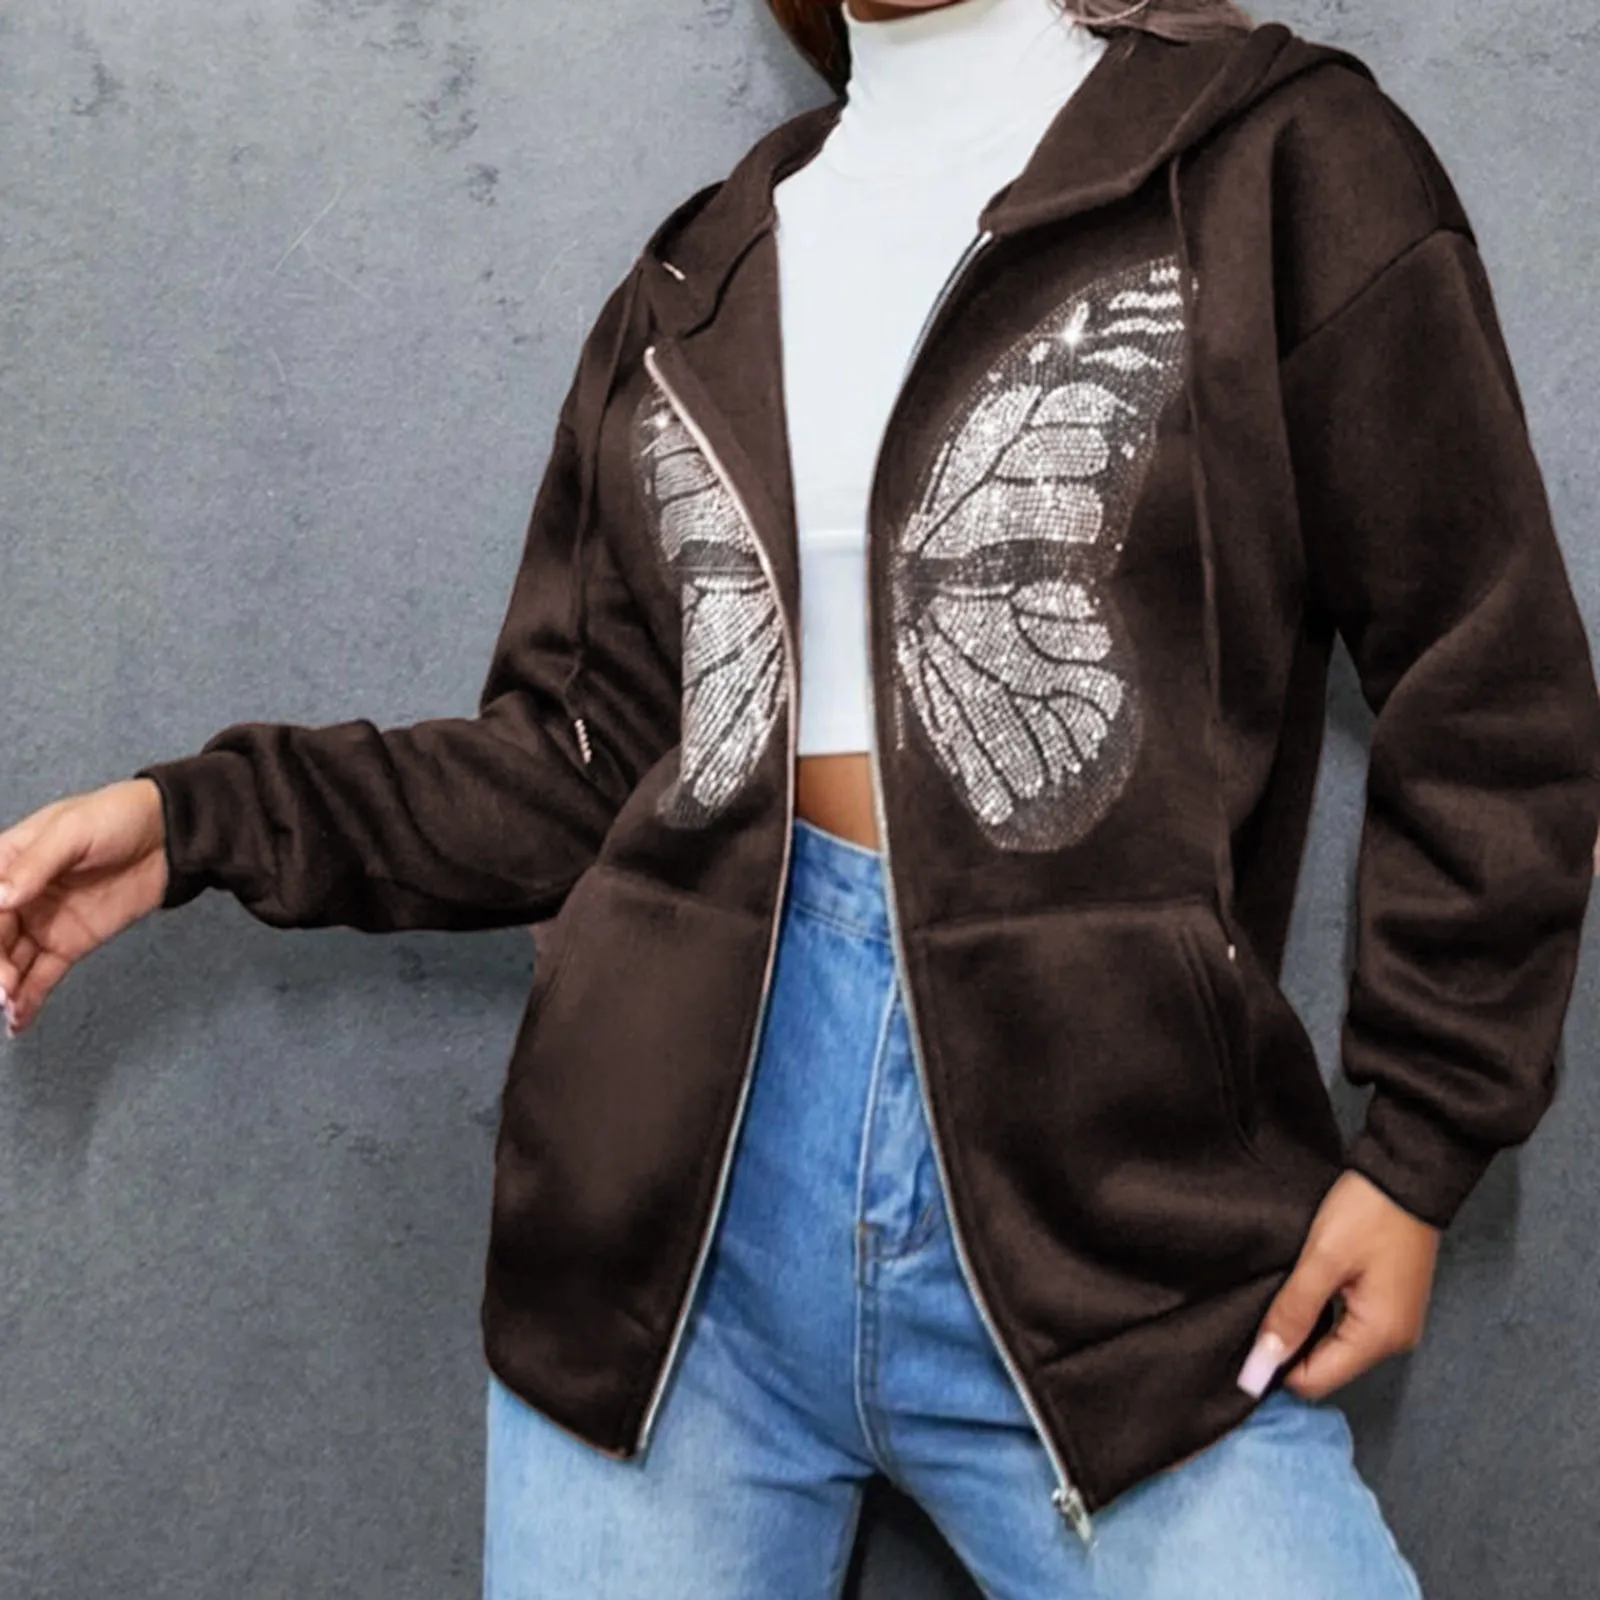 Butterfly Rhinestone Graphic Hoodie Women Brown Zip Up Sweatshirt Streetwear Jacket Clothes Vintage Pockets Long Sleeve Coat Y2k